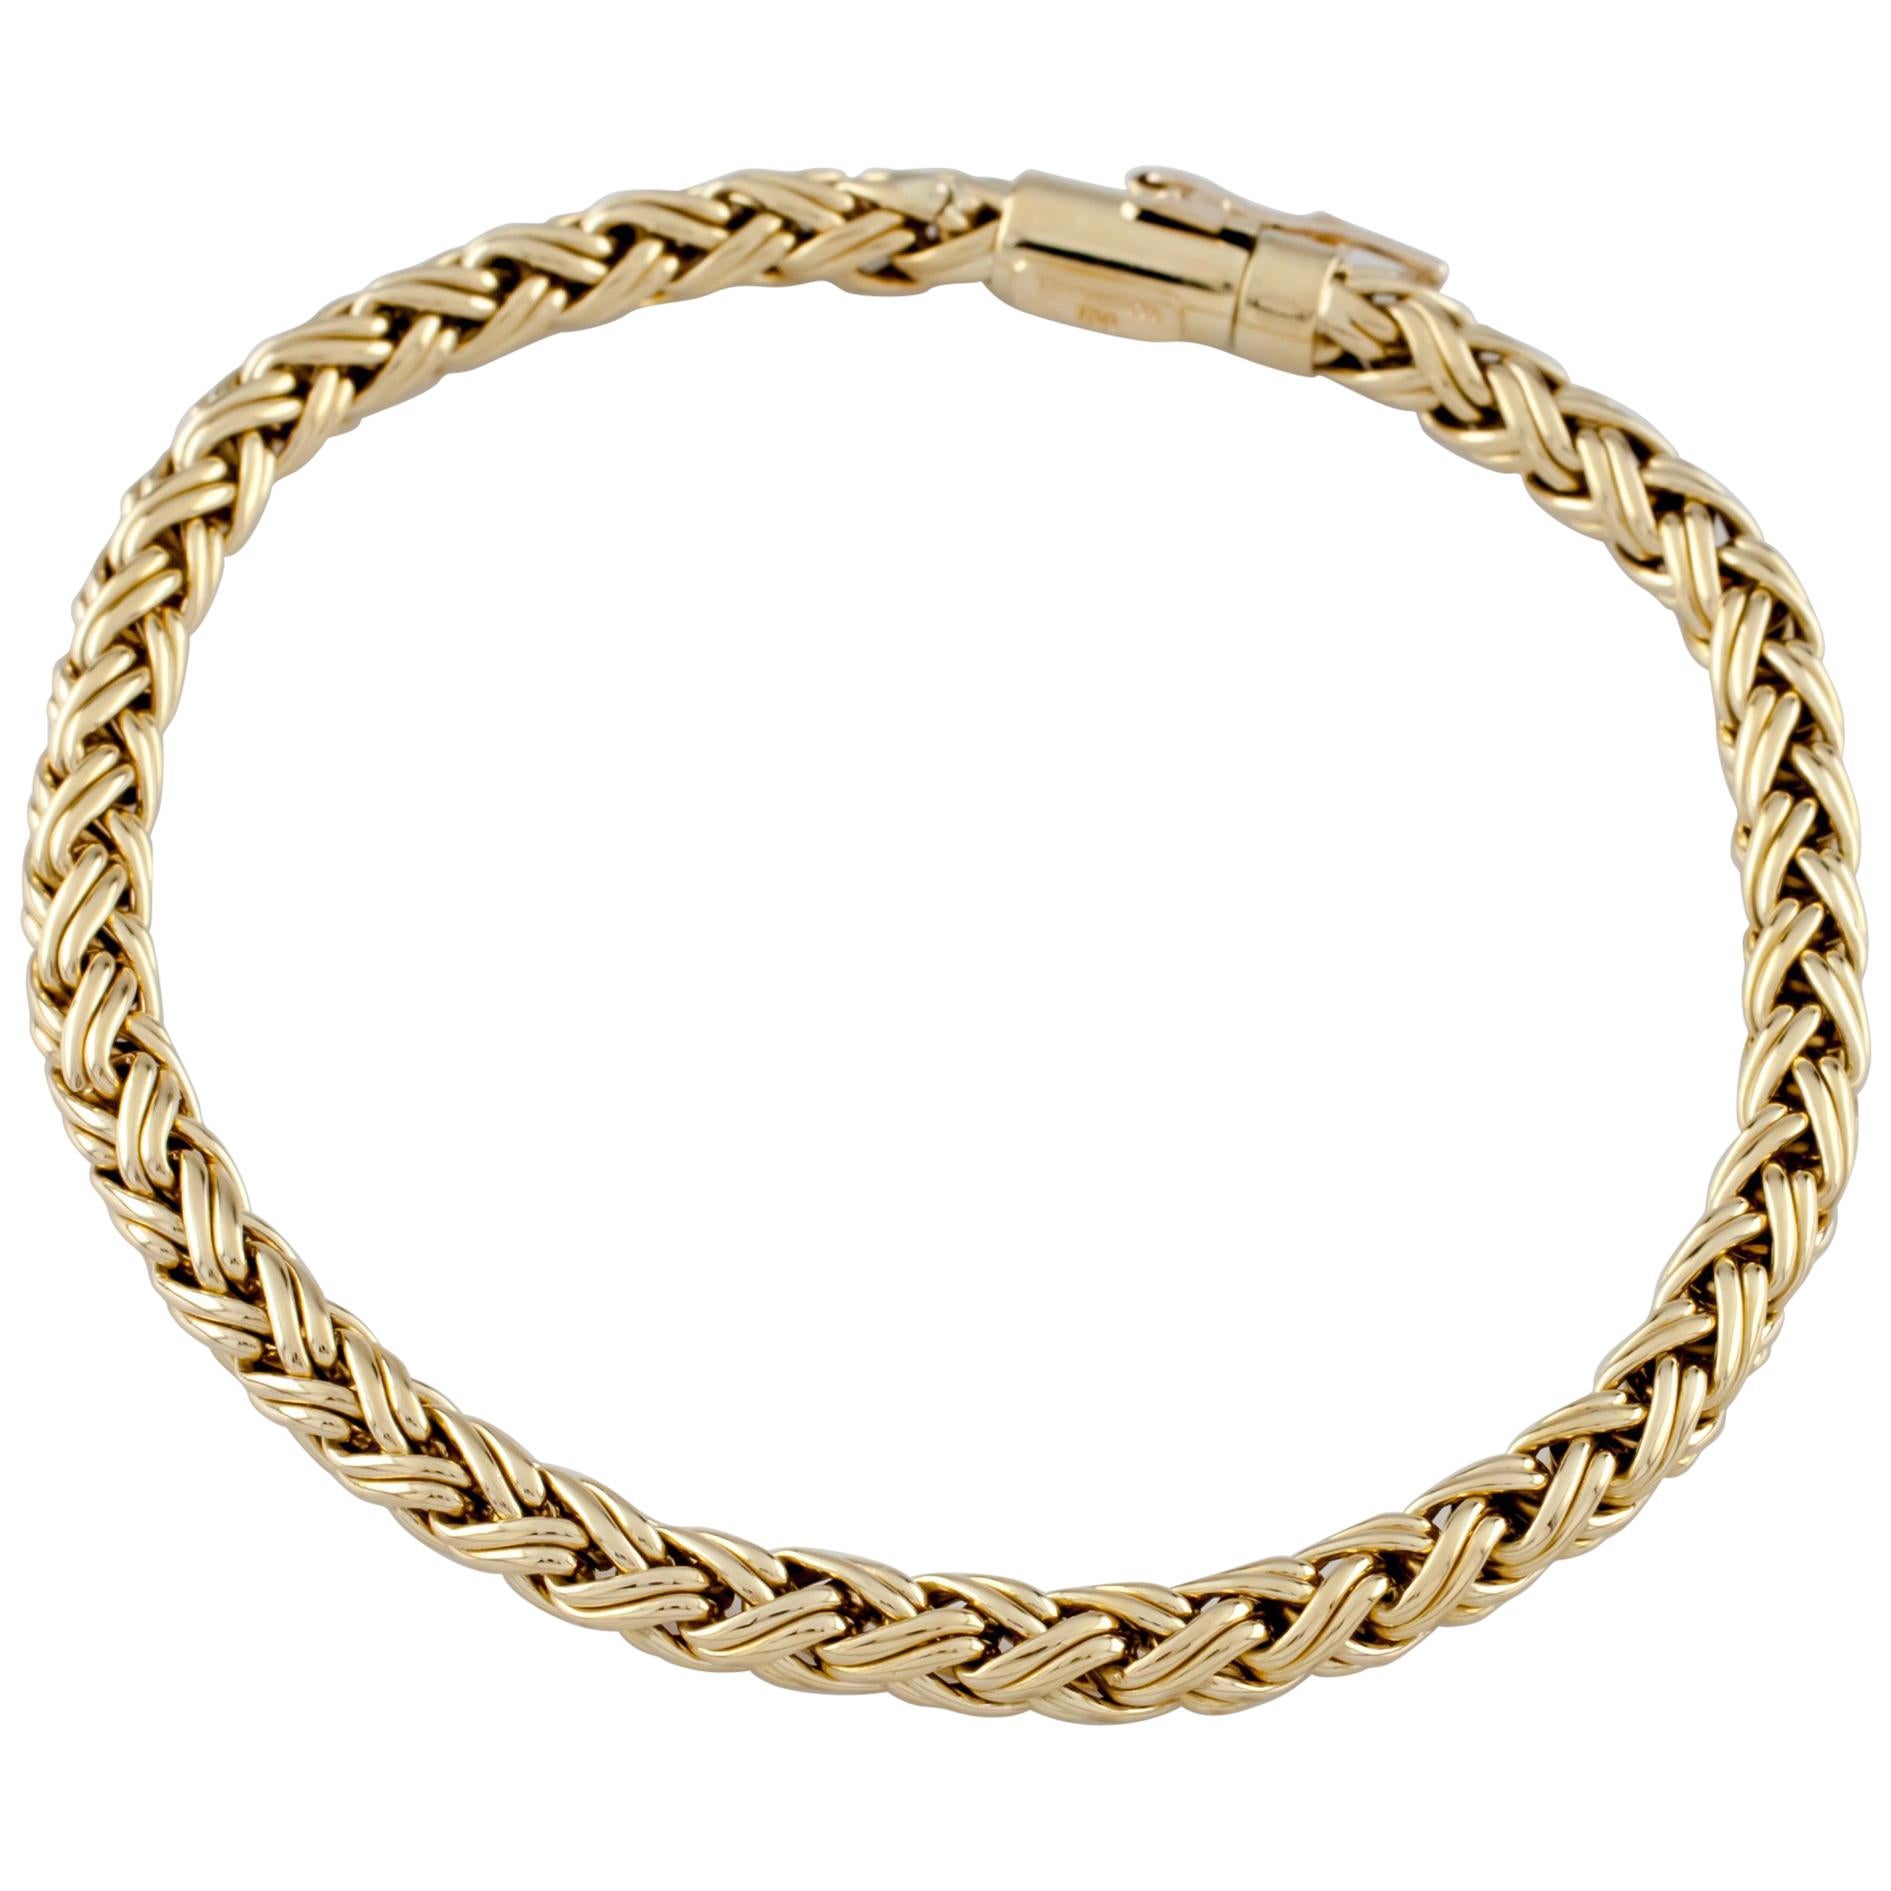 Tiffany & Co. 18 Karat Yellow Gold Russian Wheat Weave Bracelet